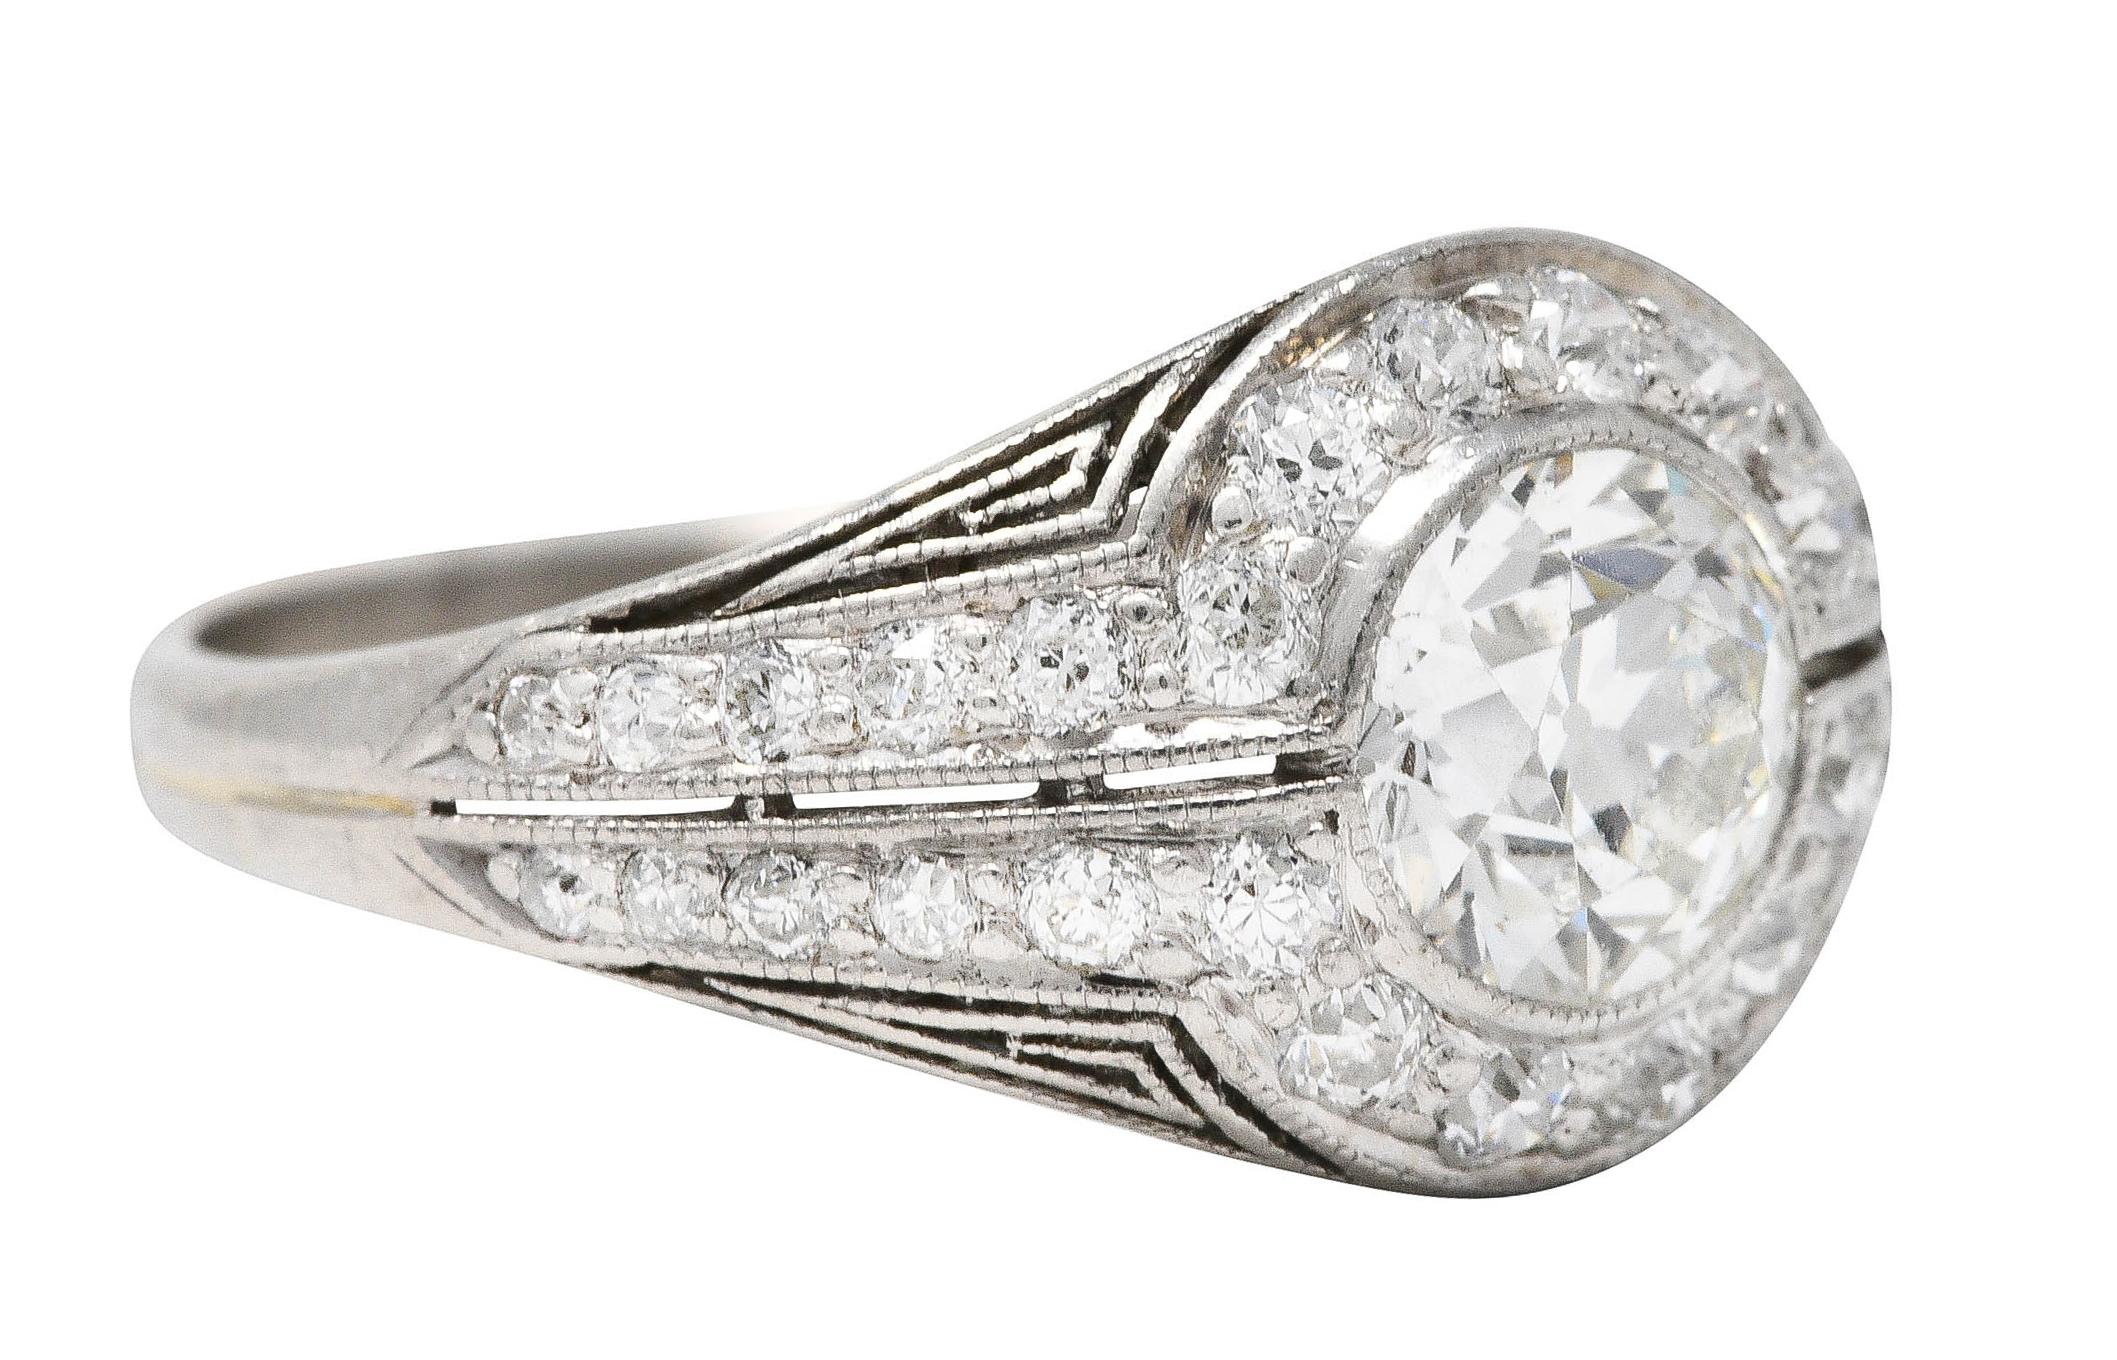 Bombè-Ring mit einem Diamanten im alten europäischen Schliff mit einem Gewicht von ca. 0,70 Karat - Farbe J und Reinheit VS

Lünette gefasst und umgeben von einem runden Halo aus Diamanten im alten europäischen Schliff

Dann flankiert von weiteren